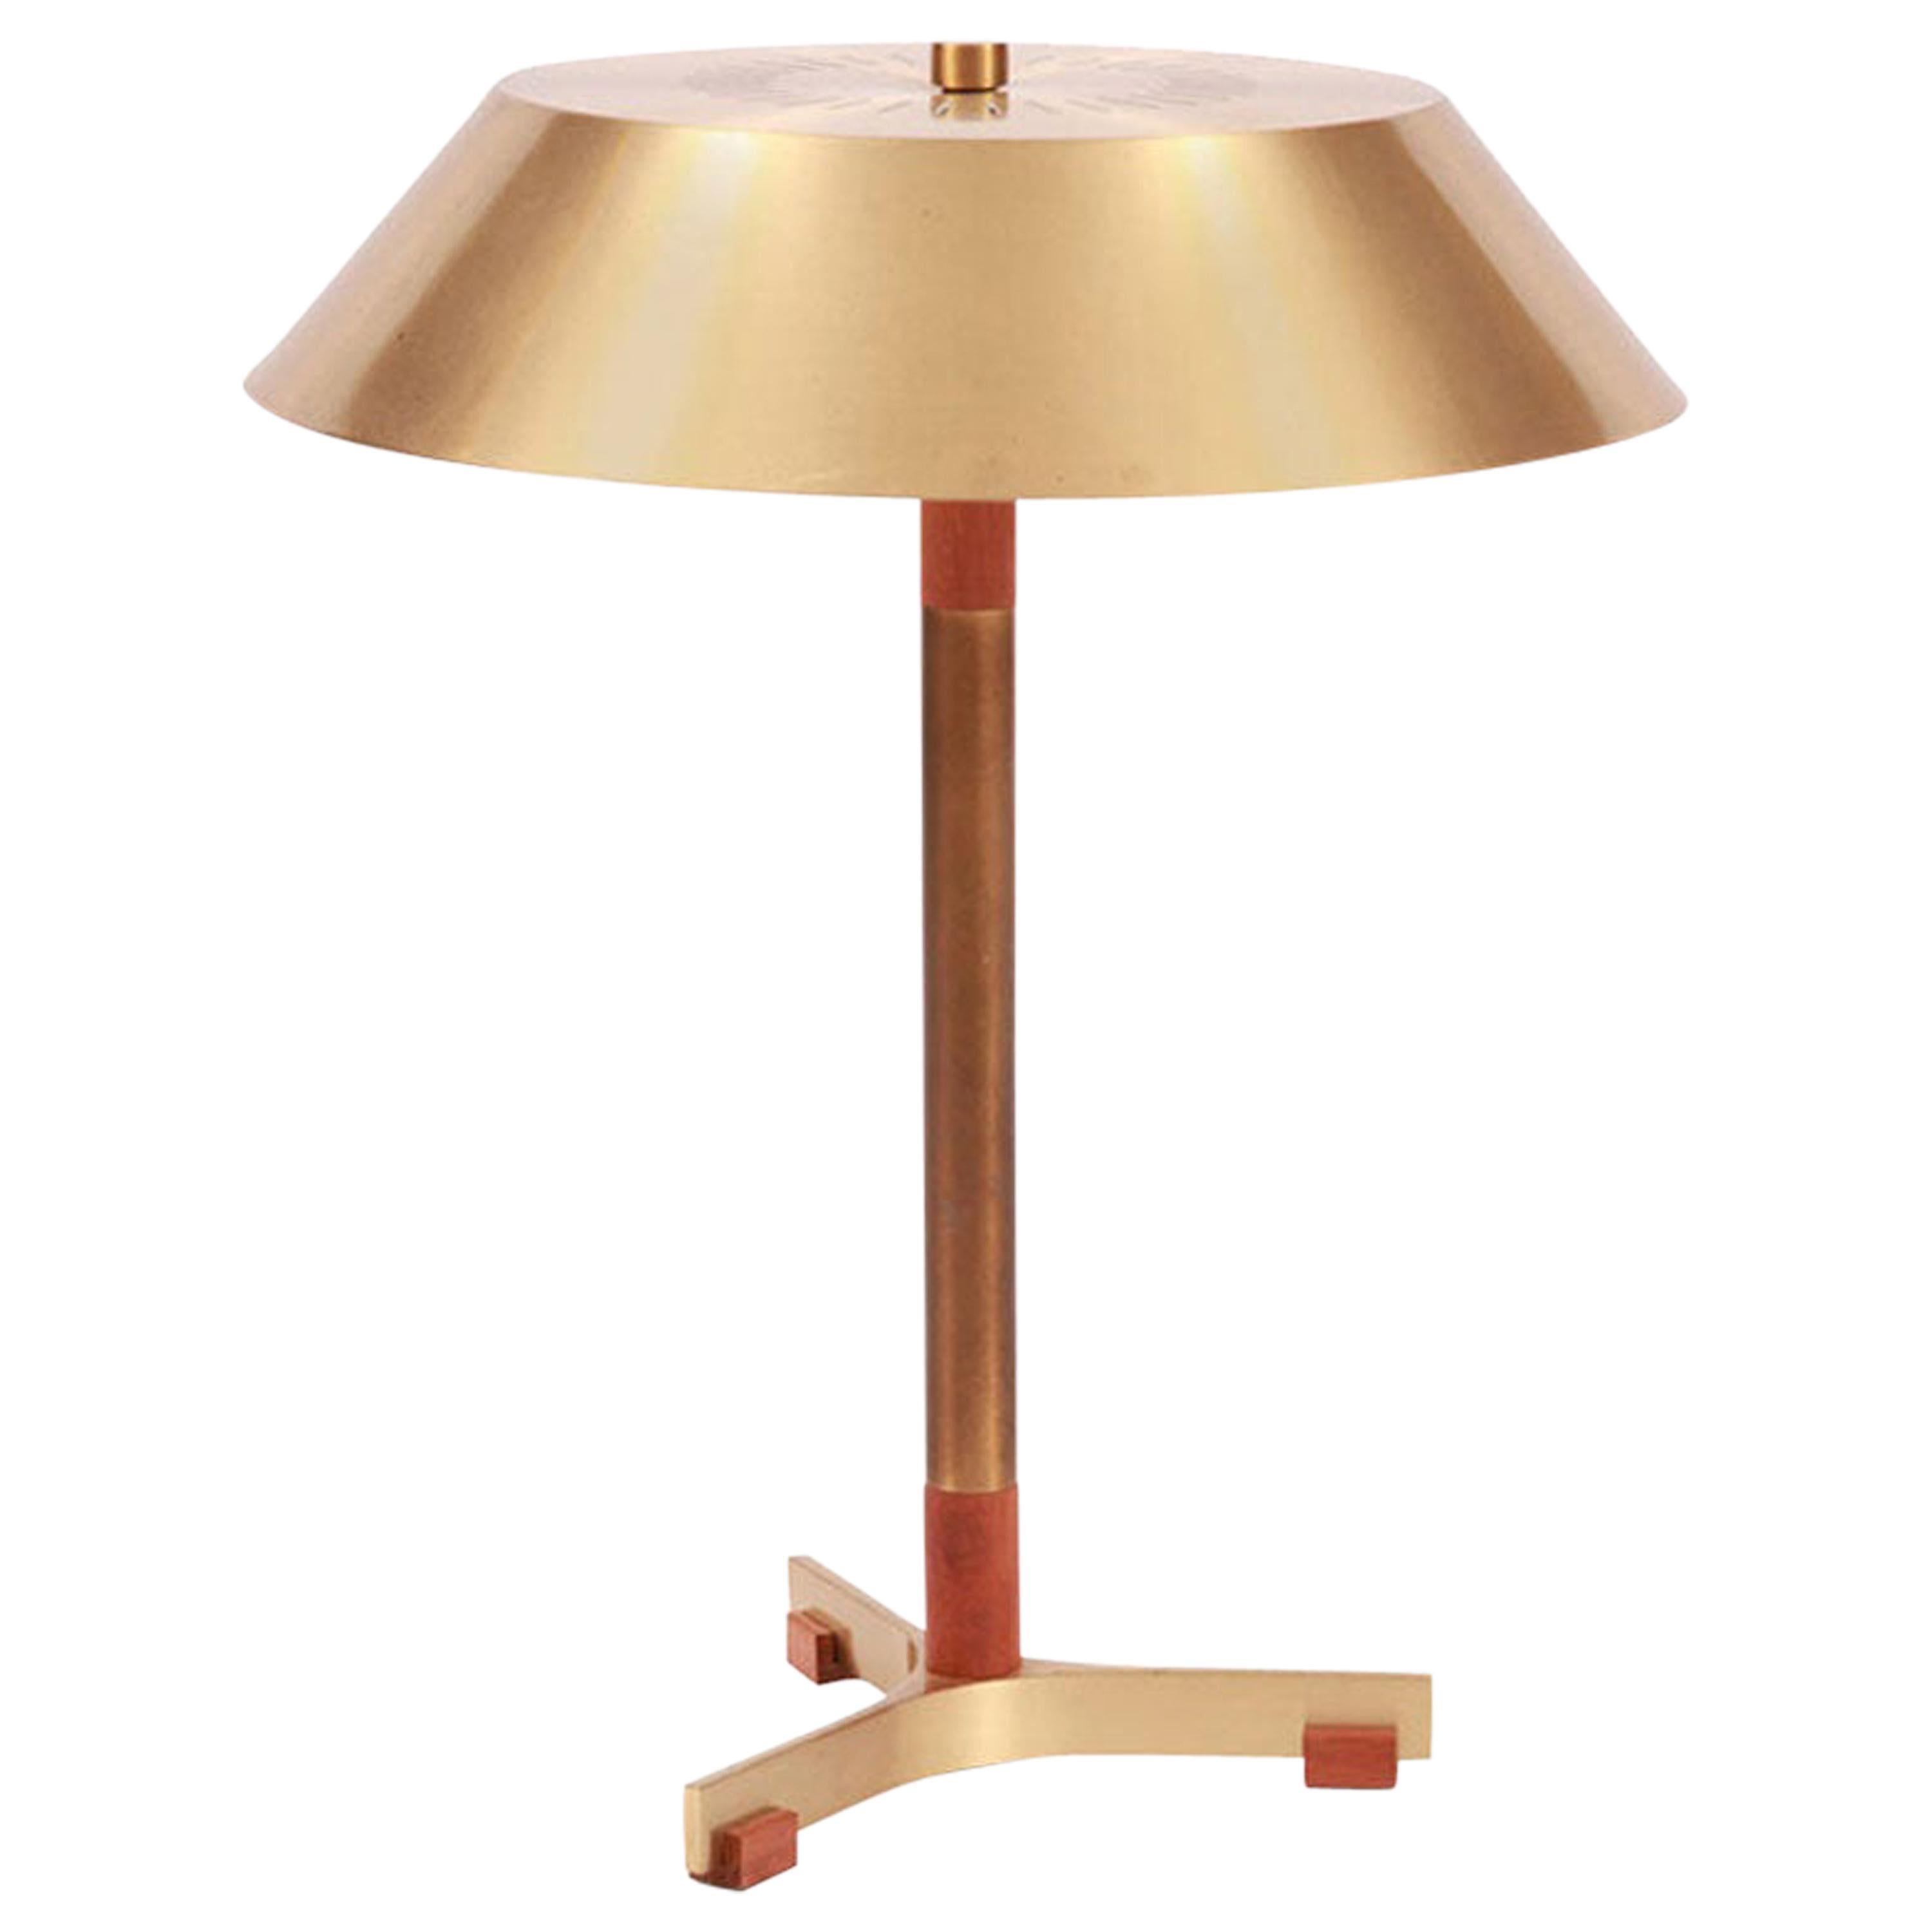 Fog & Mørup Brass and Teak Table Lamp by Jo Hammerborg